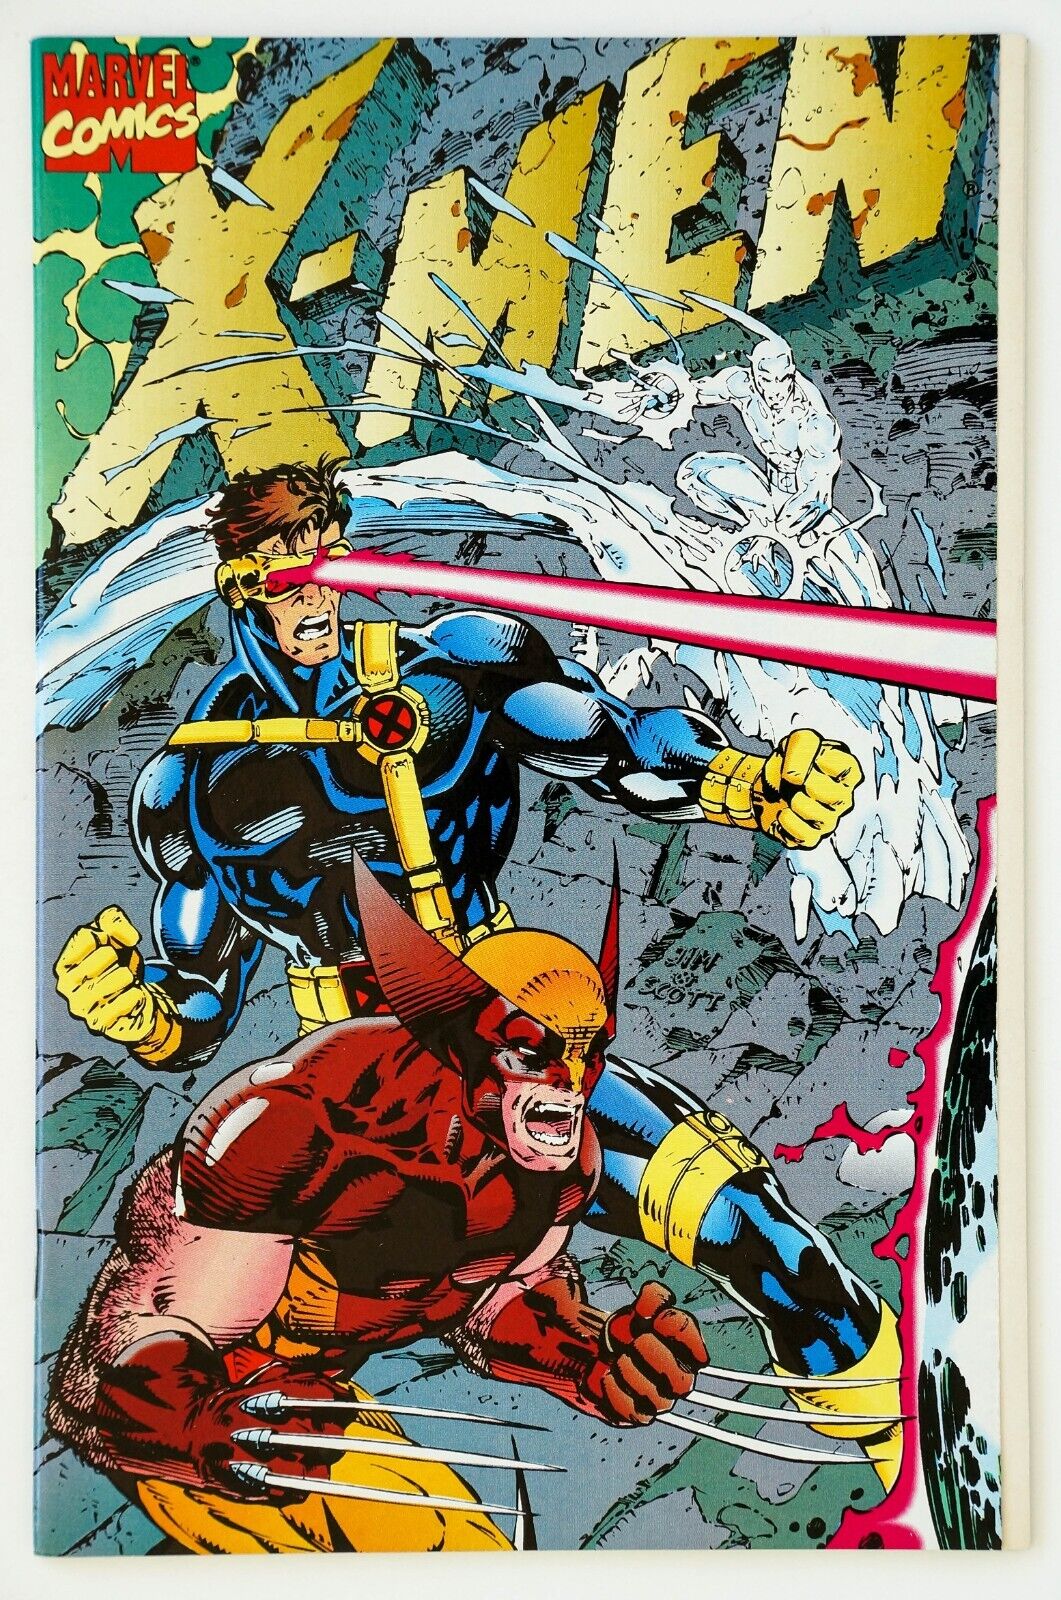 X-Men #1 (Special Collectors Edition) Vol. 1, No. 1, Oct.1991, Jim Lee Cover